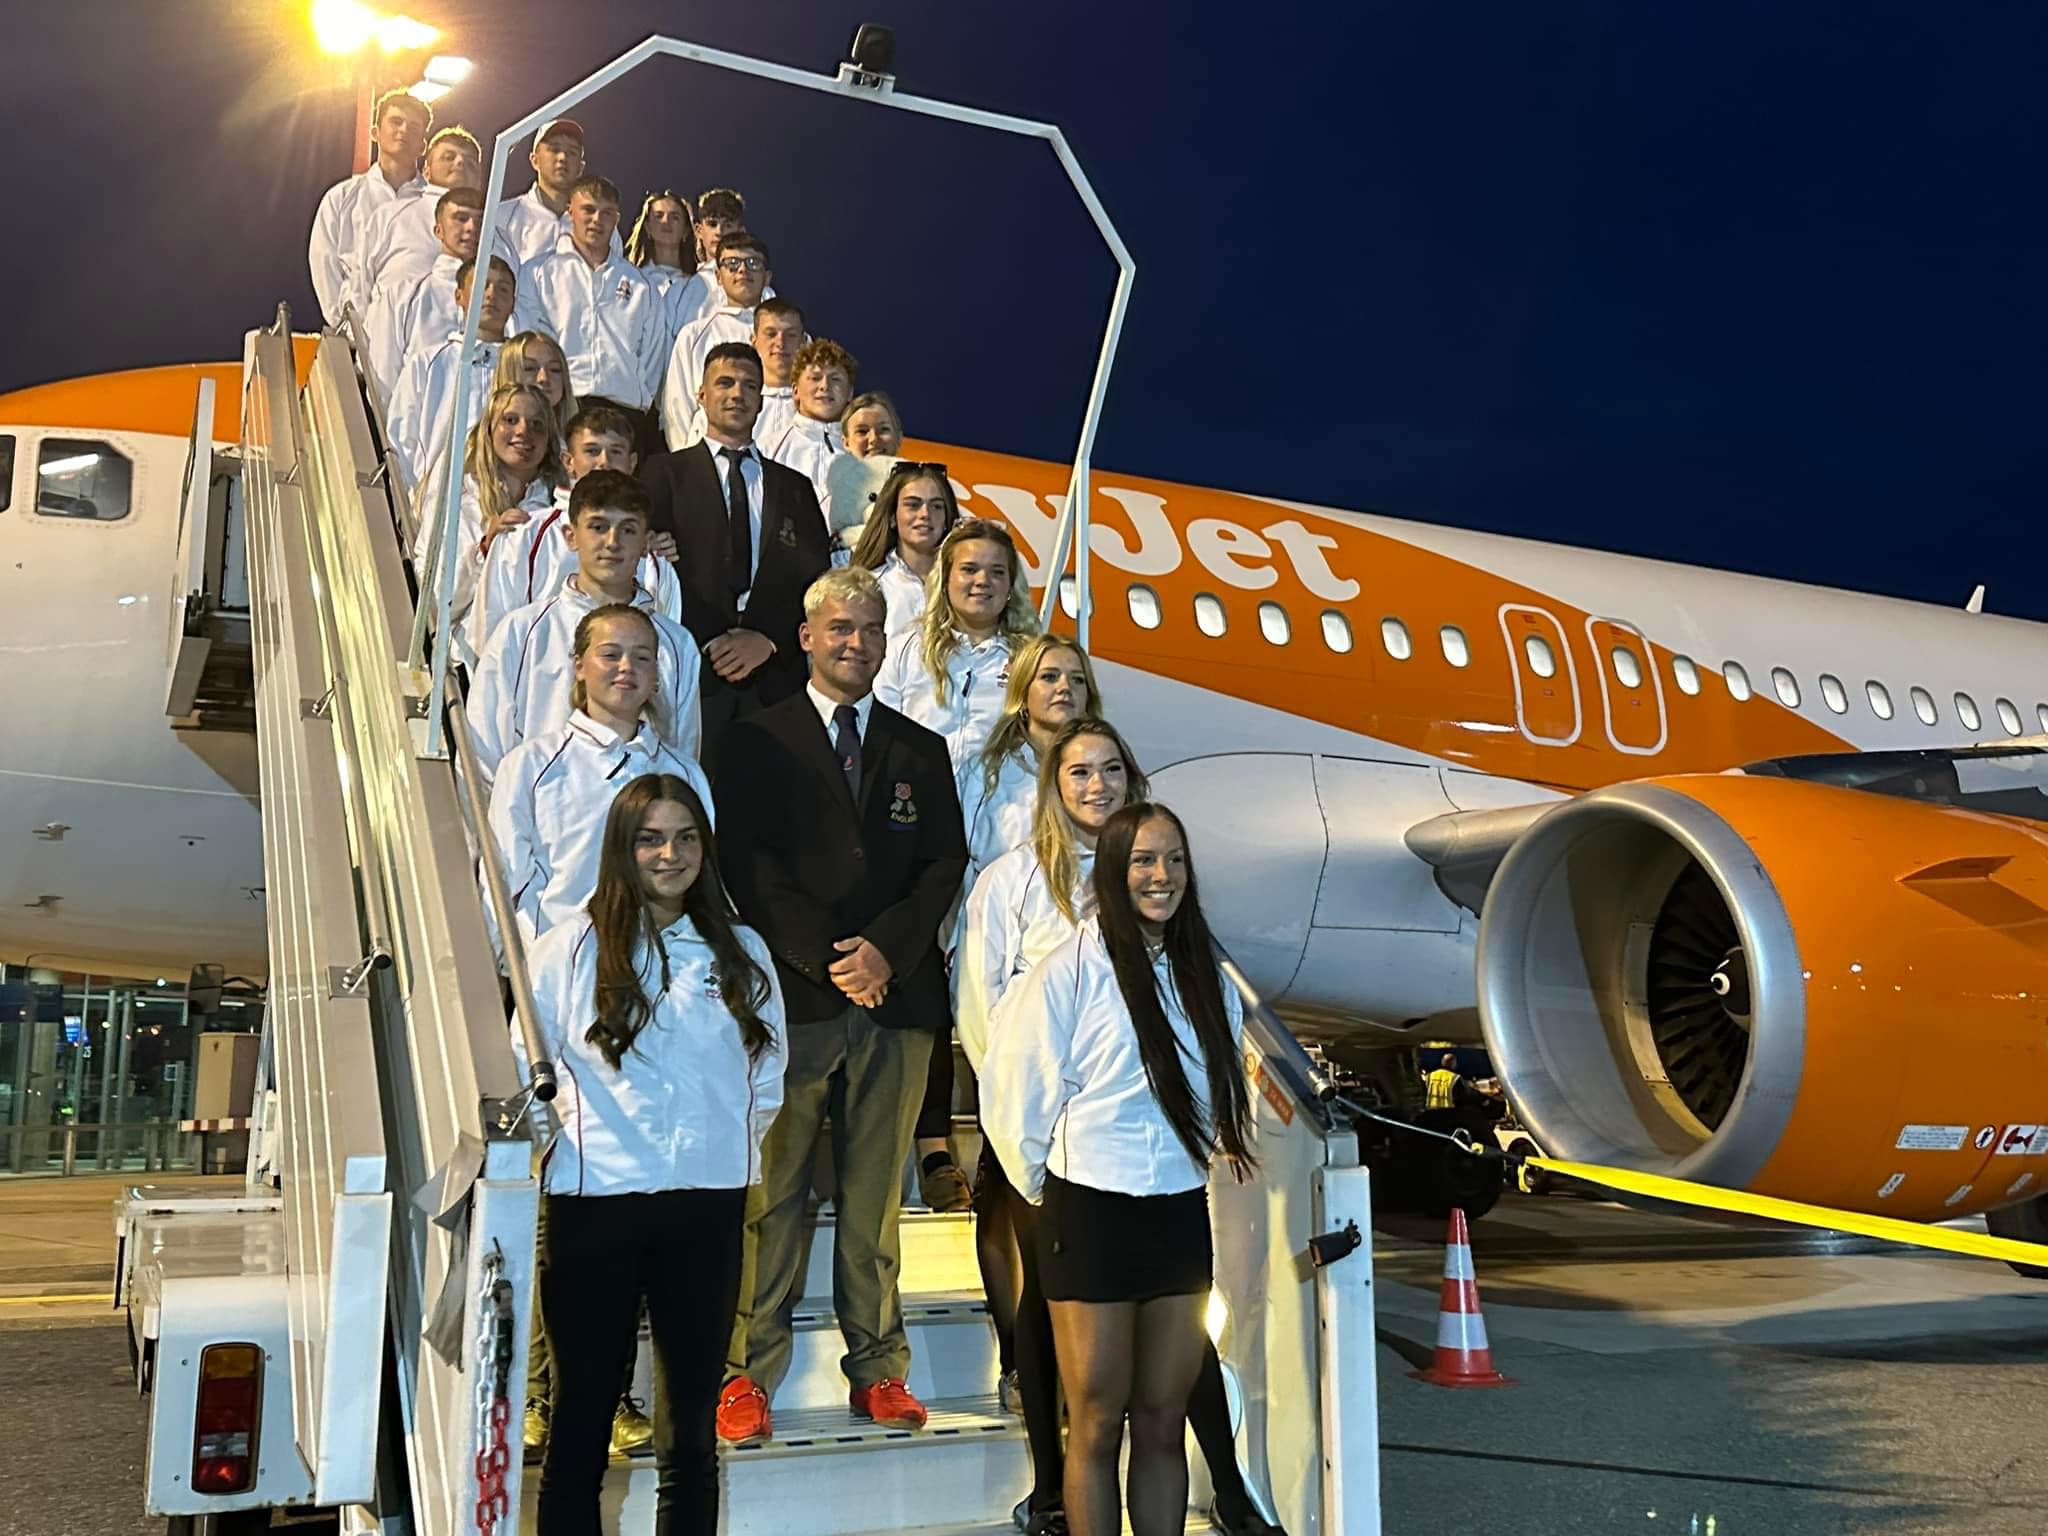 England juniors arriving in Switzerland